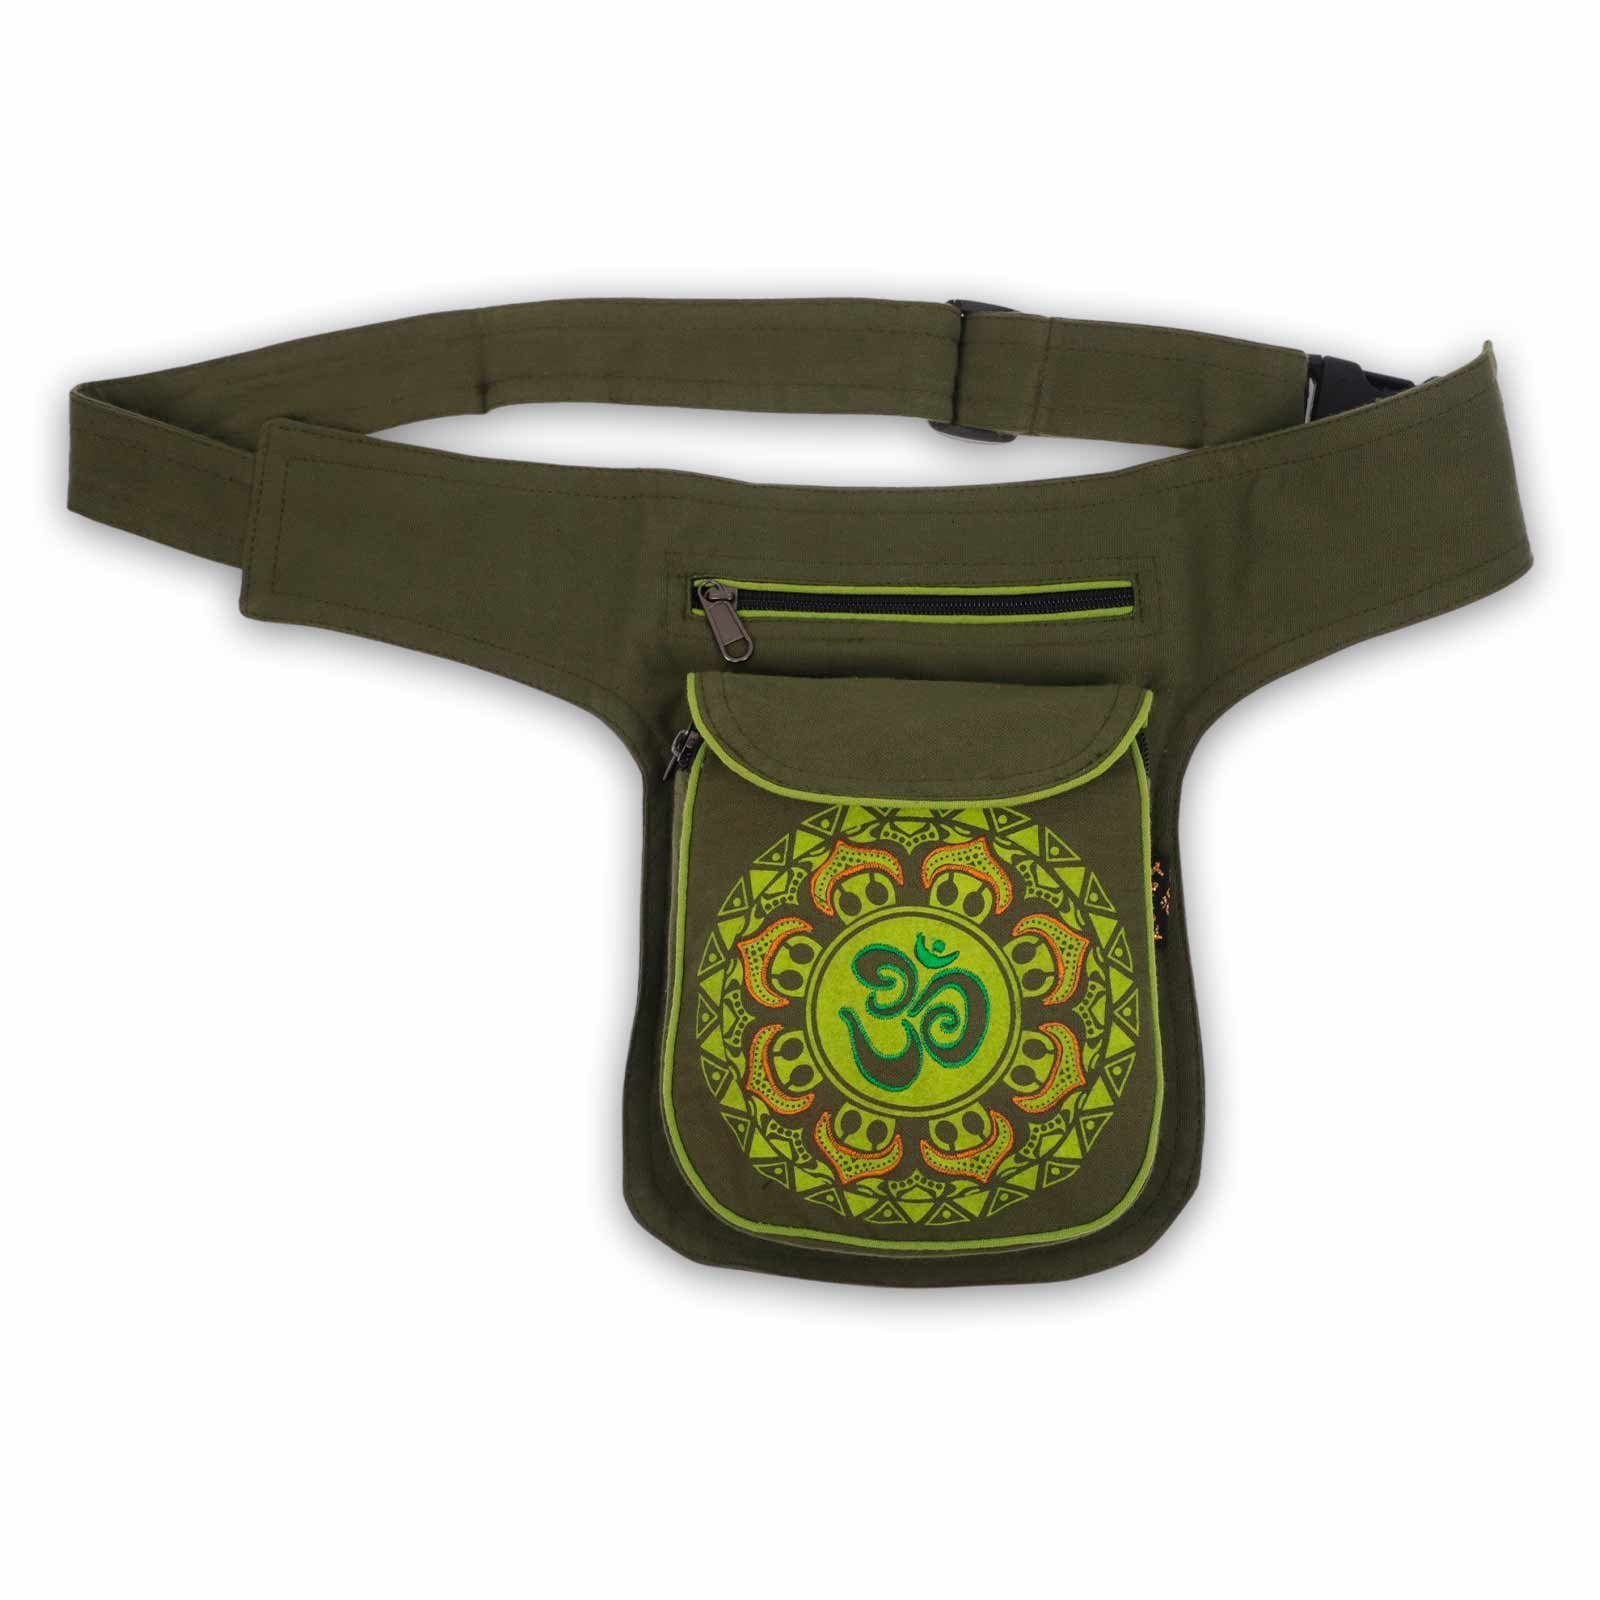 KUNST UND MAGIE Bauchtasche OM Bauchtasche Hüfttasche Mandala Grün Gürteltasche Sidebag Mandala